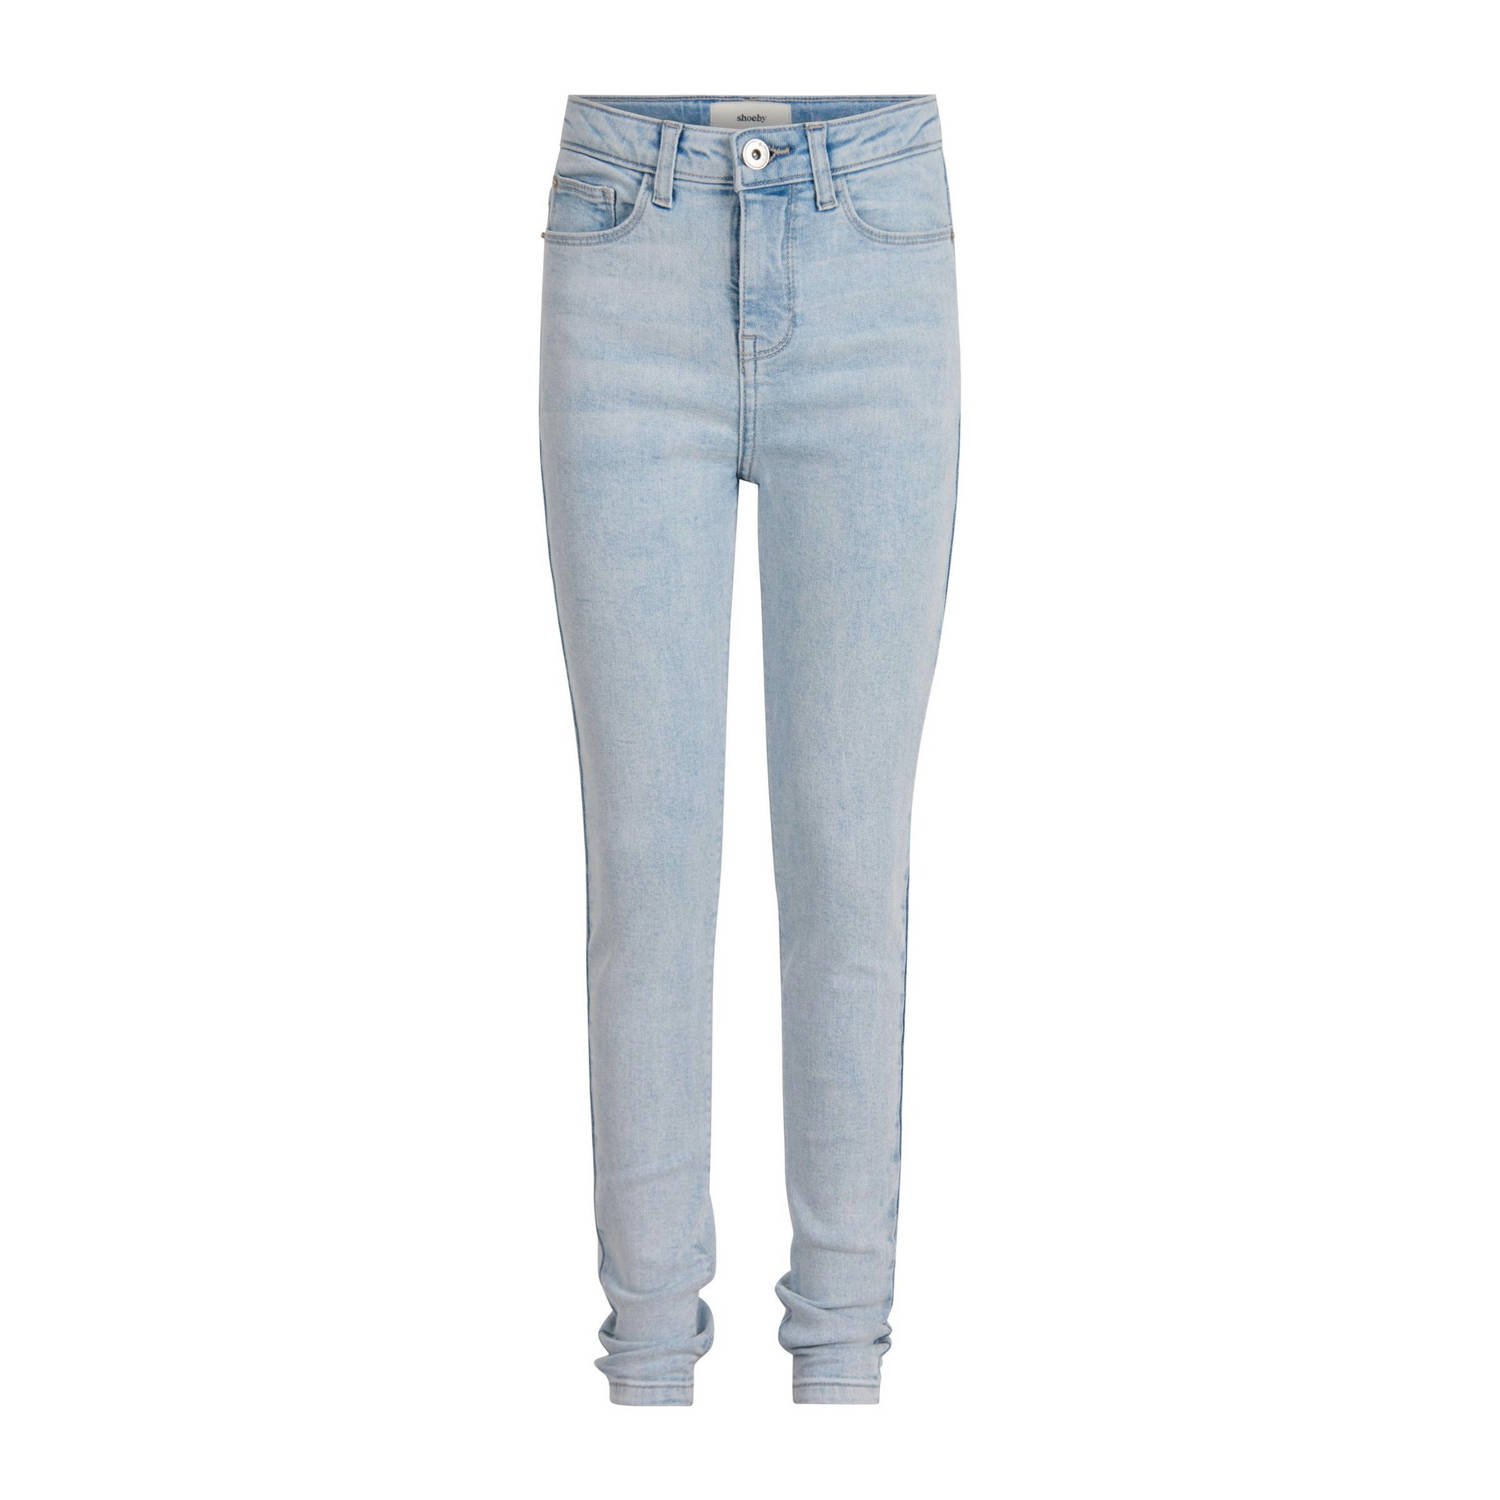 Shoeby high waist skinny jeans light blue denim bleached Blauw Effen 104